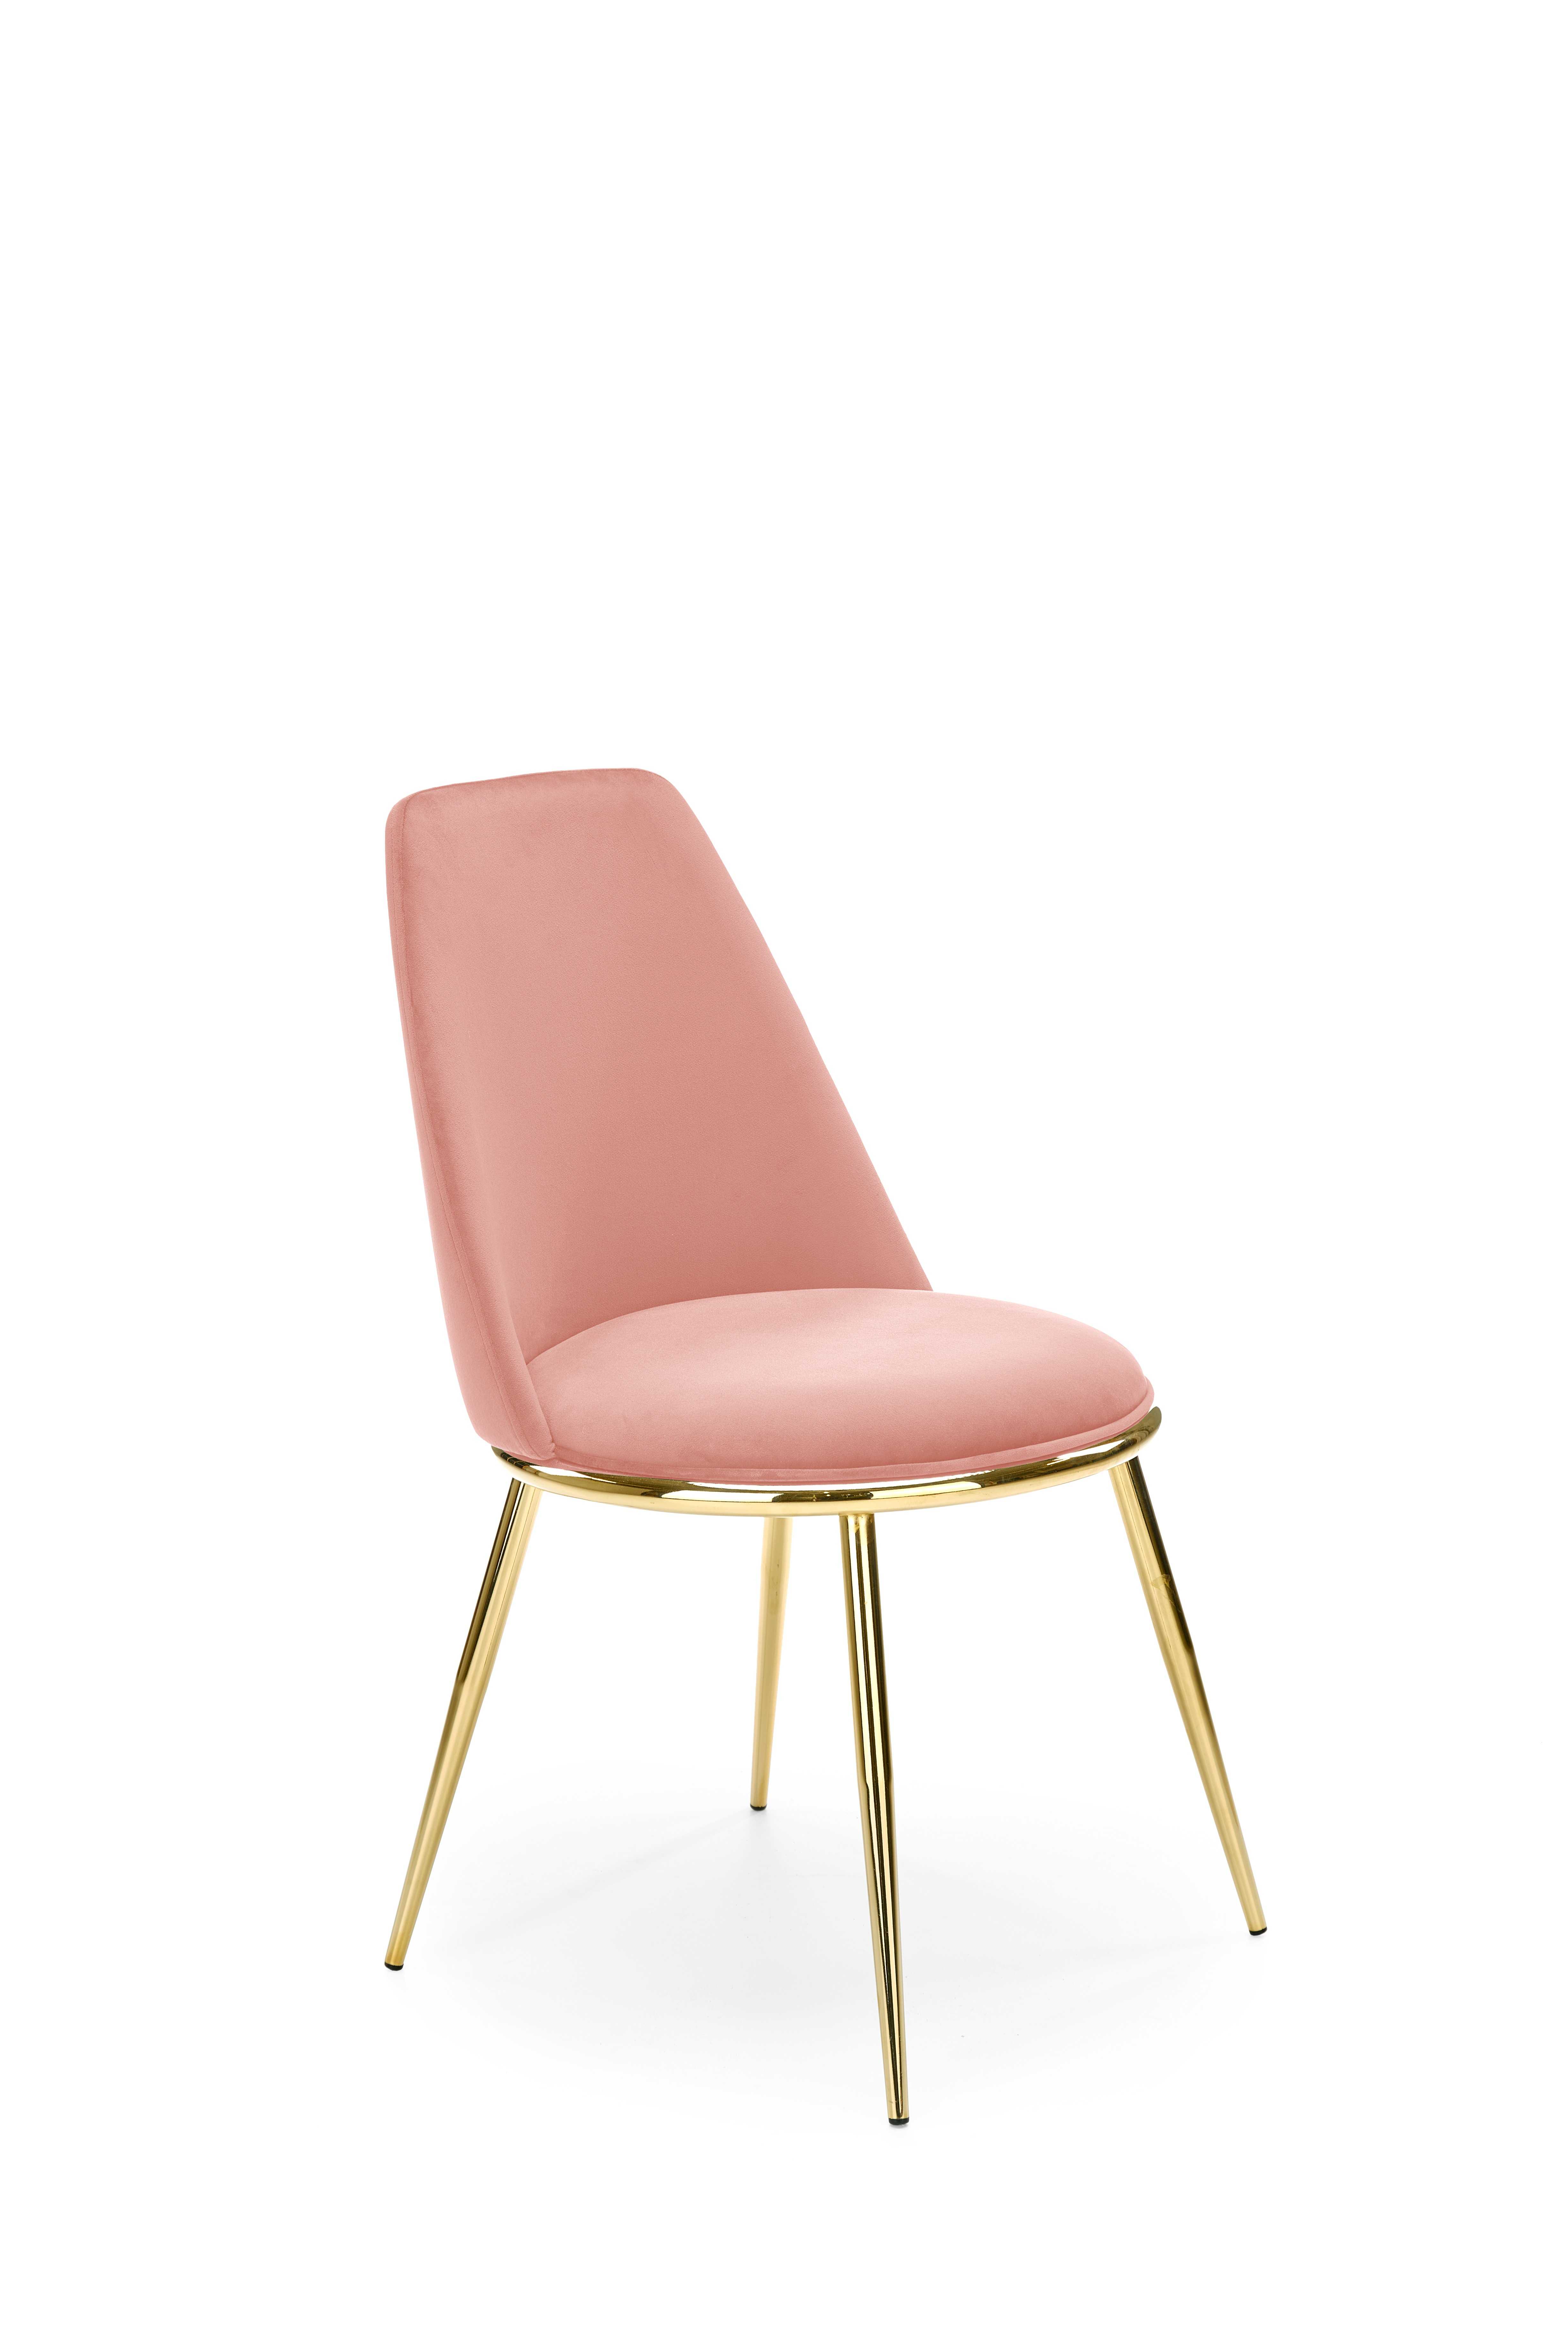 K460 stolica roza